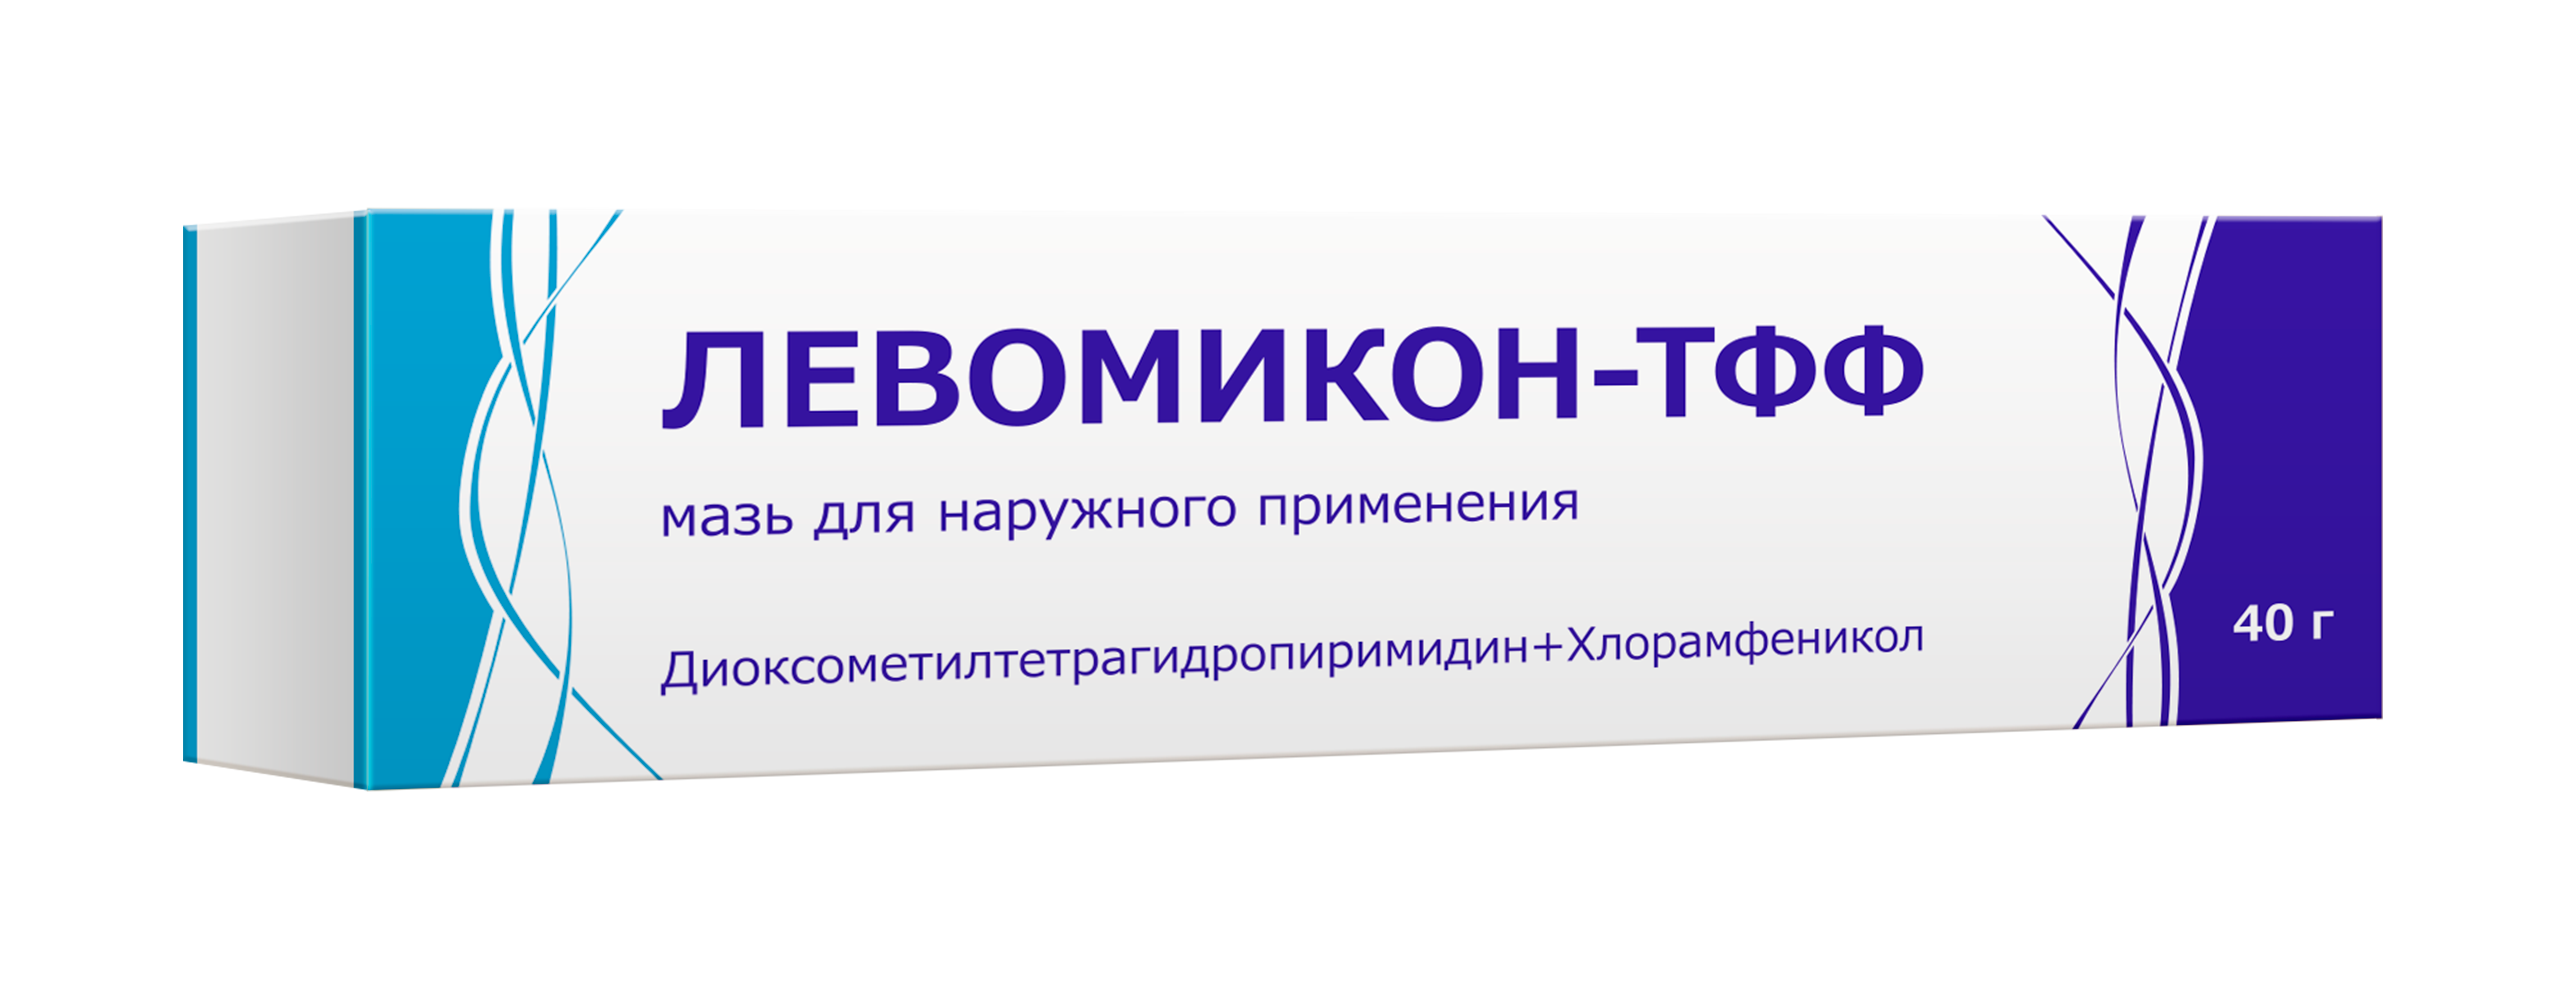 Левомикон -ТФФ - ООО «Тульская фармацевтическая фабрика»